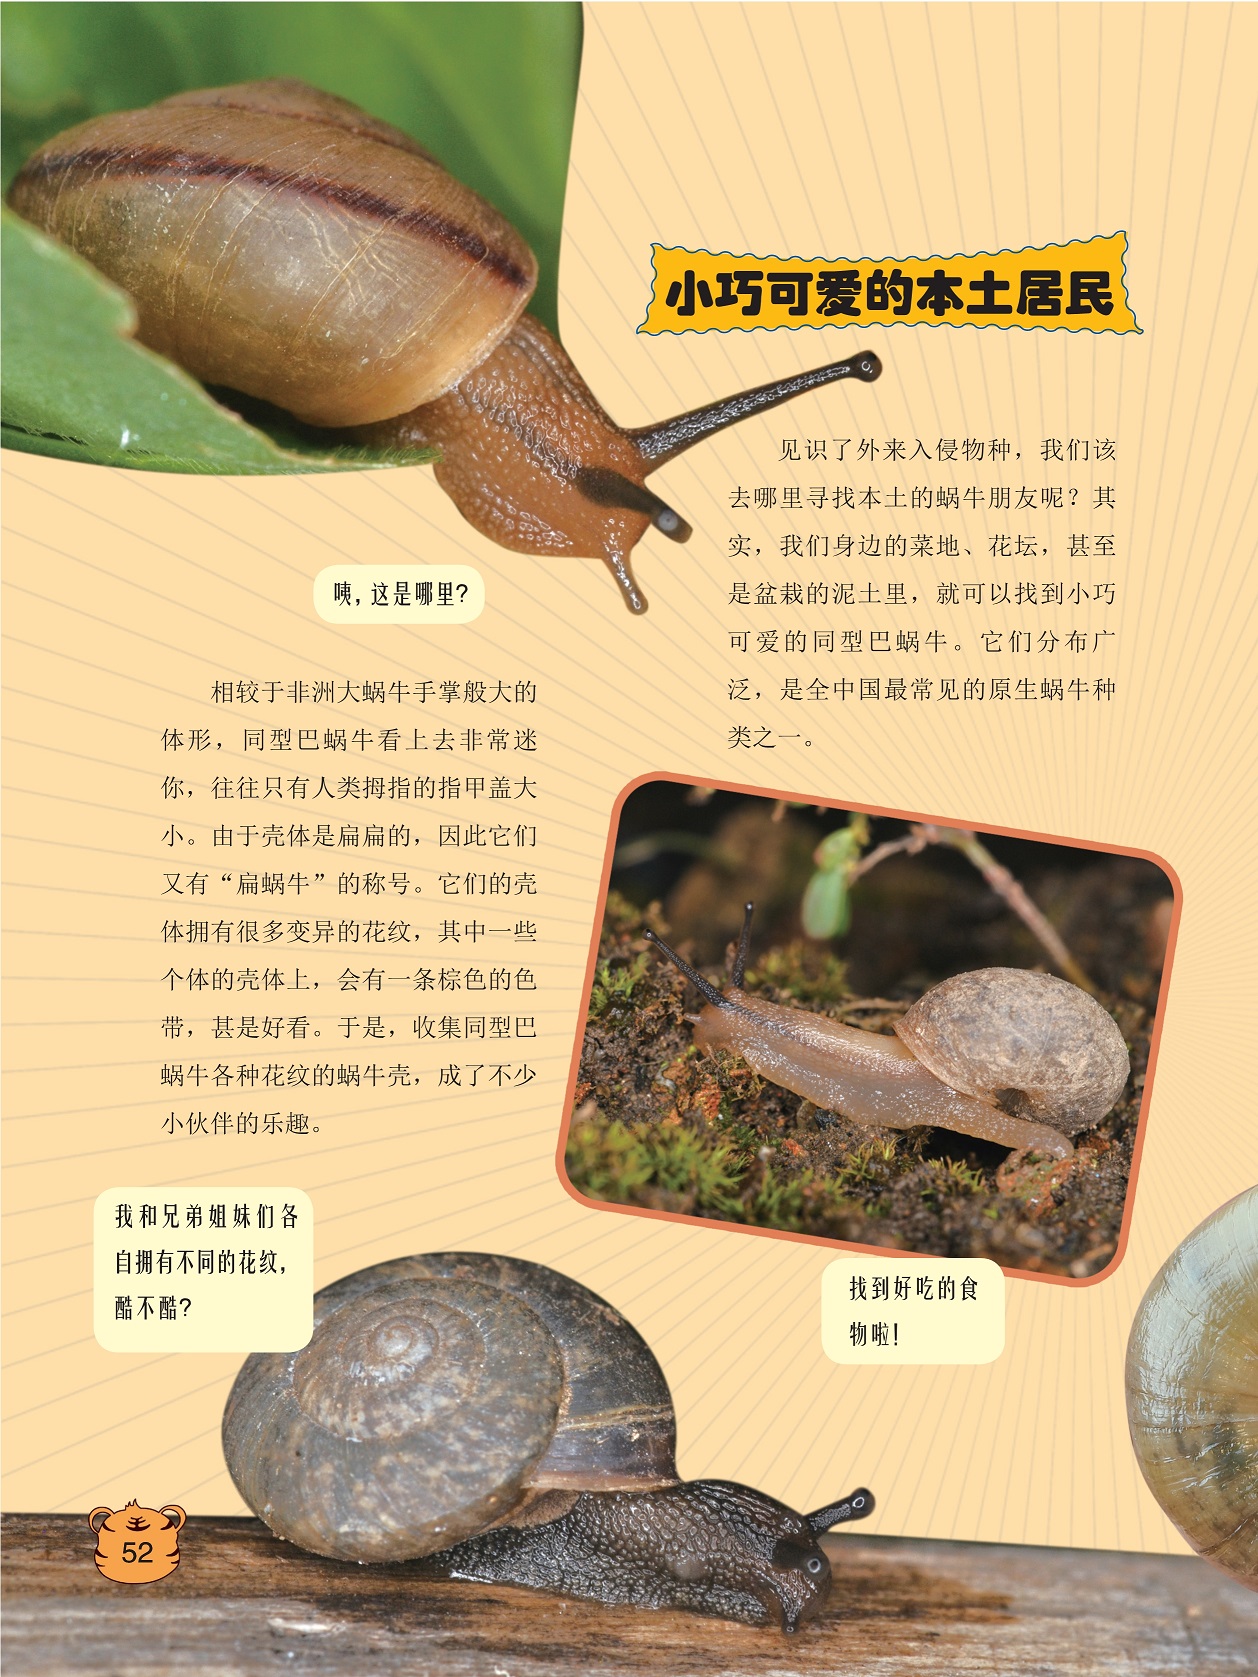 同型巴蜗牛看上去非常迷你,全中国最常见的原生蜗牛种类